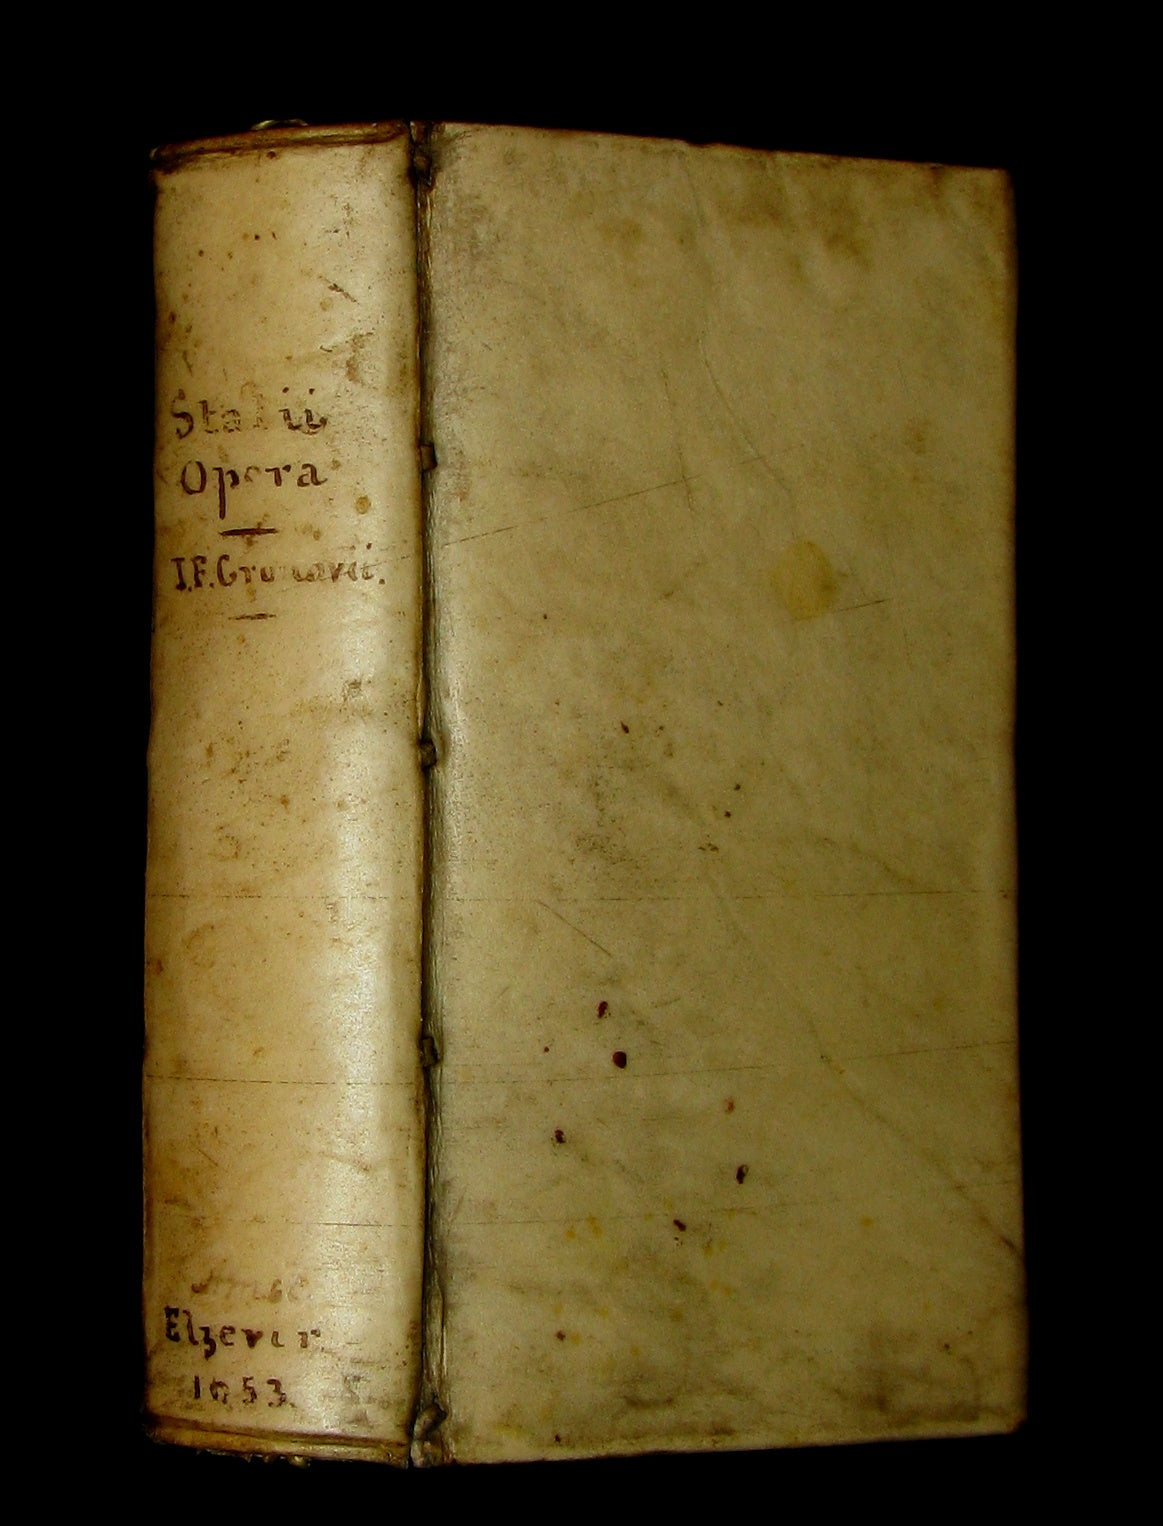 1653 Rare Latin Vellum Book - Publius Papinius Statius Works - Roman poet of the 1st century AD